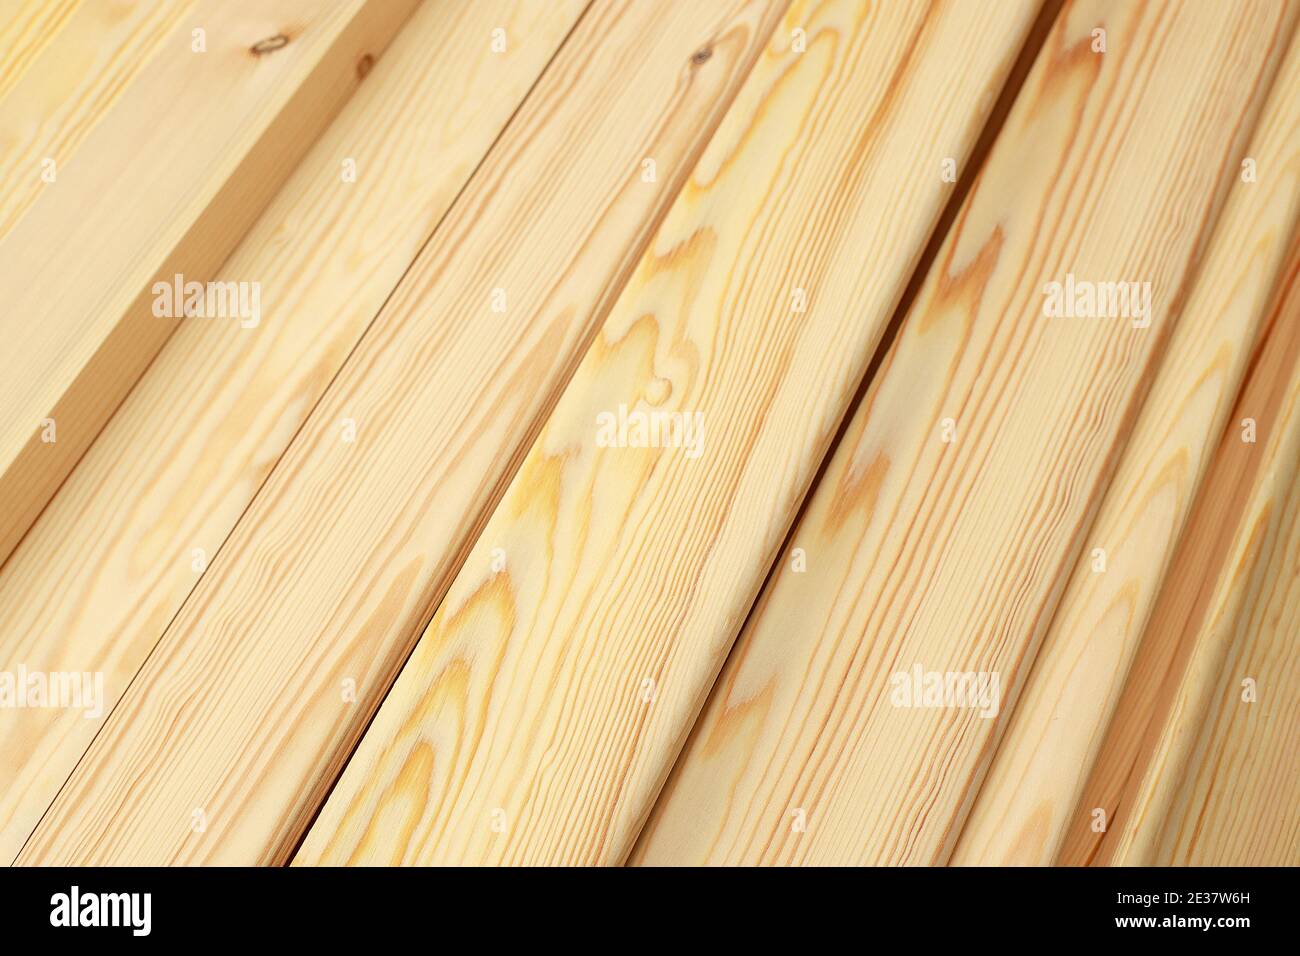 Die schmalen Holzleisten oder die Bretter in der Nähe liegen im Stapel. Dies ist ein edel poliertes Holz in der Schreinerei. Stockfoto